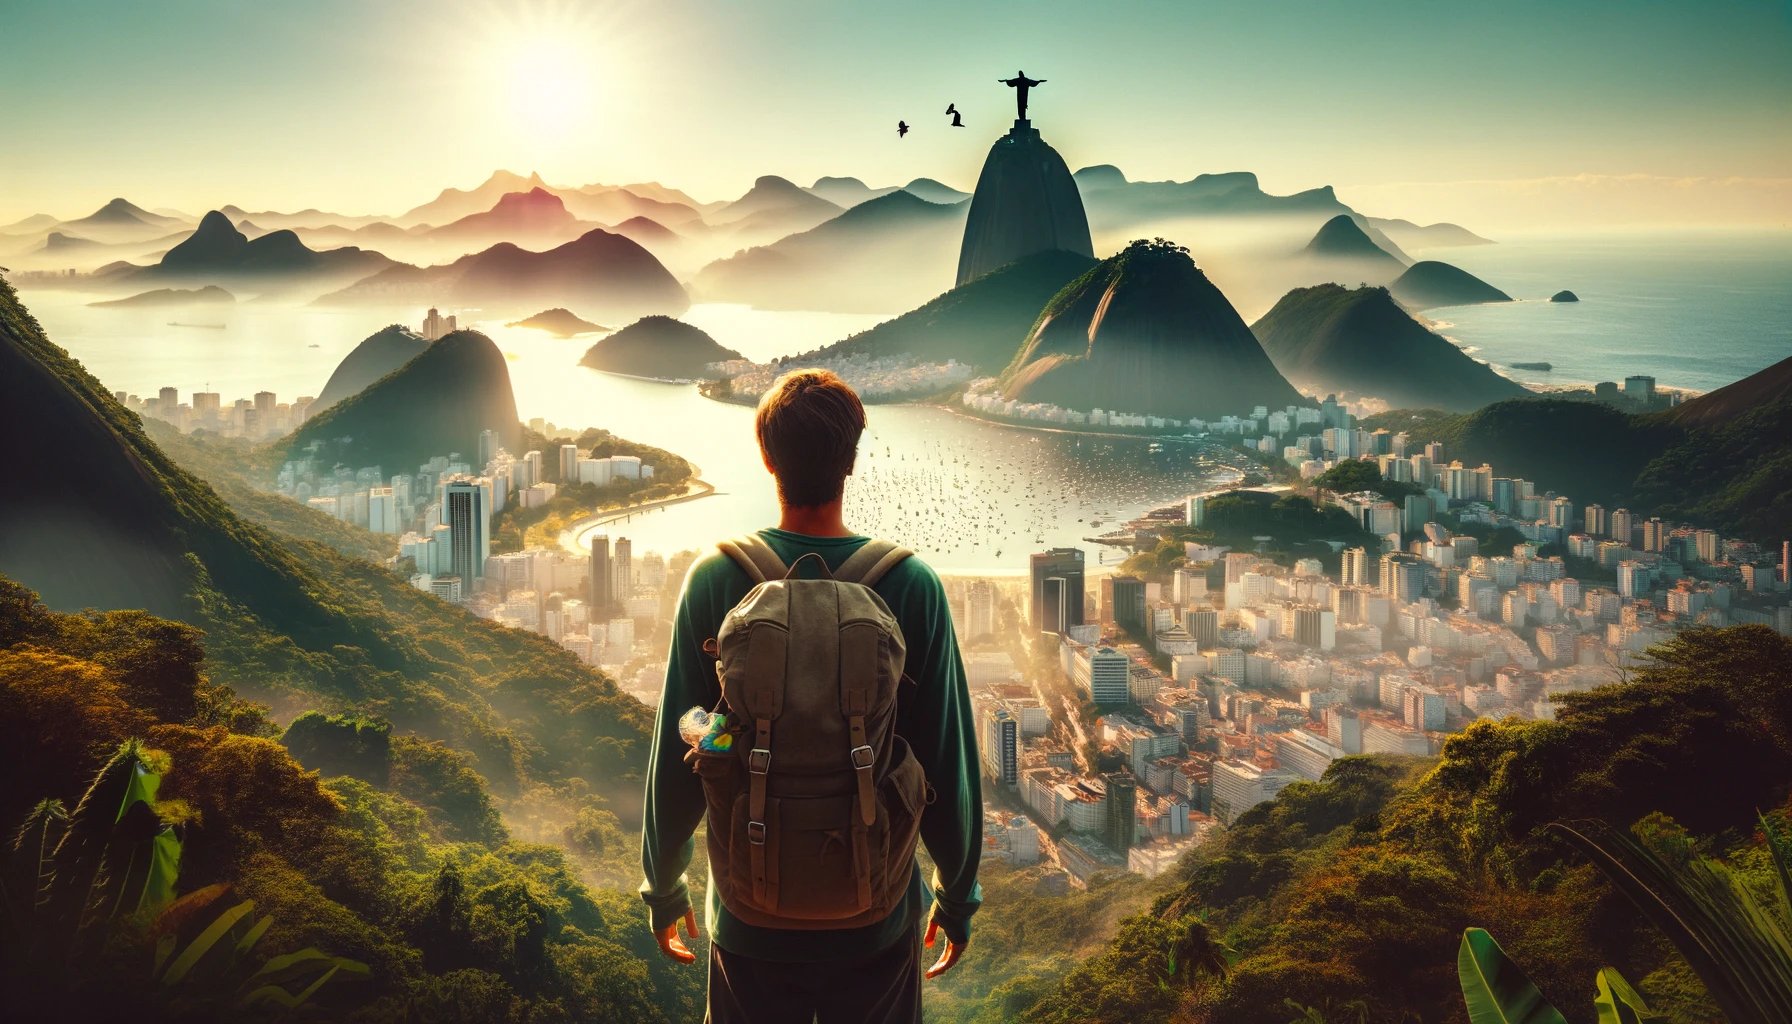 adaptándose a la vida en Río de Janeiro